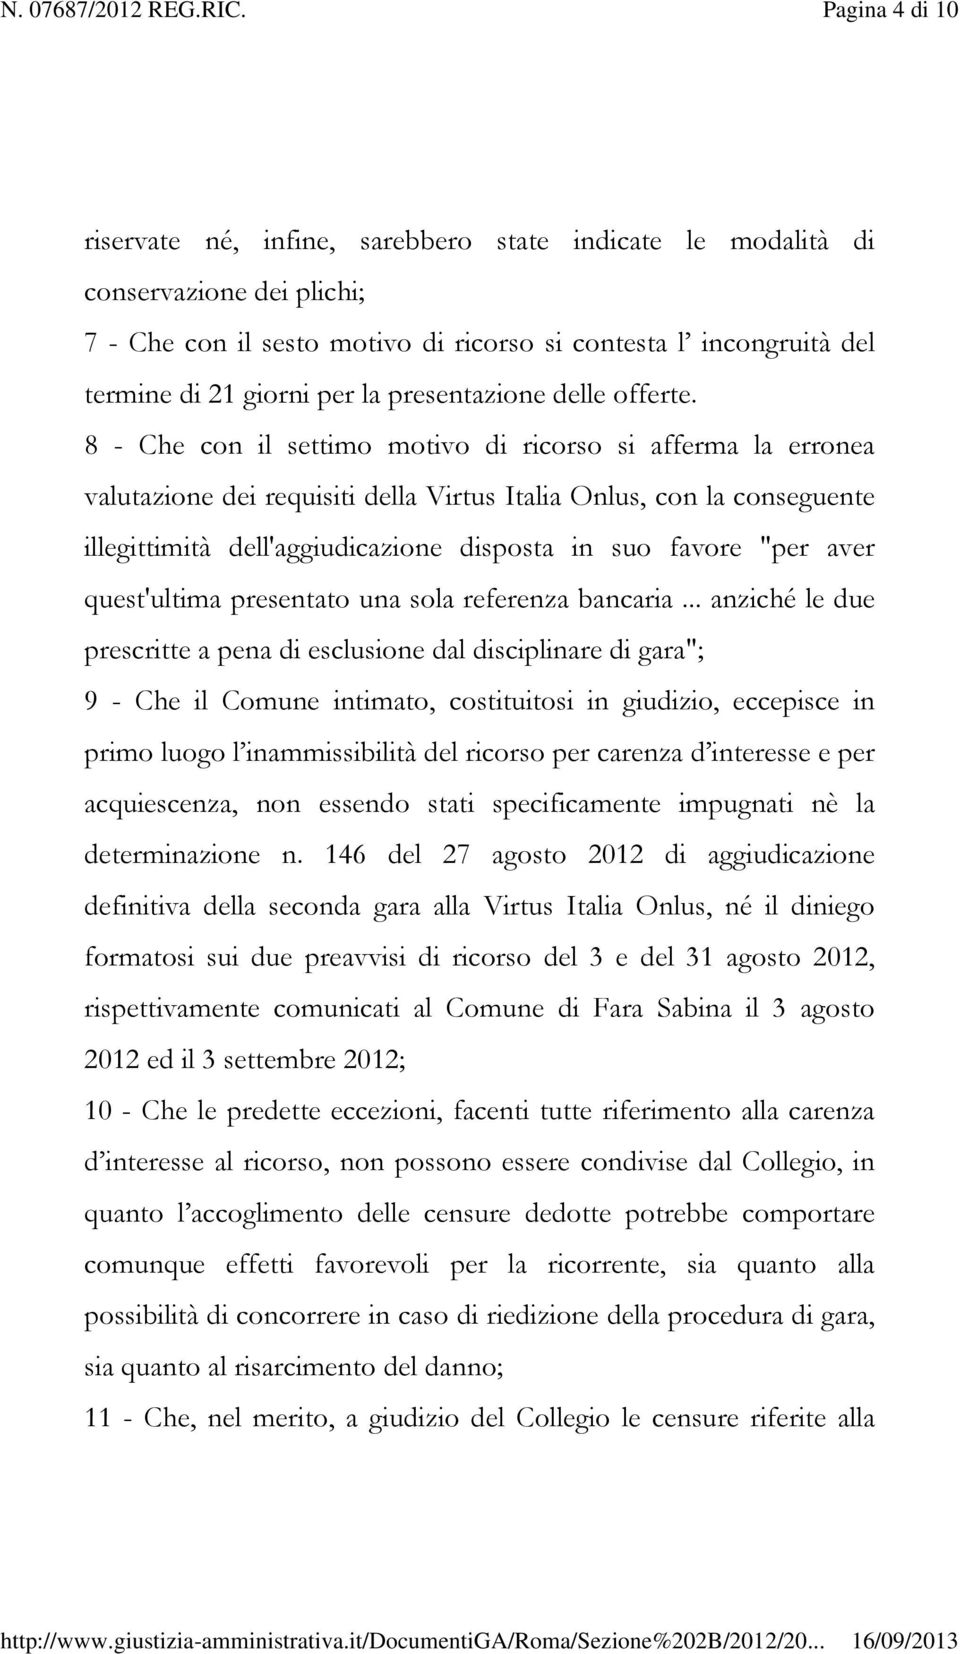 8 - Che con il settimo motivo di ricorso si afferma la erronea valutazione dei requisiti della Virtus Italia Onlus, con la conseguente illegittimità dell'aggiudicazione disposta in suo favore "per